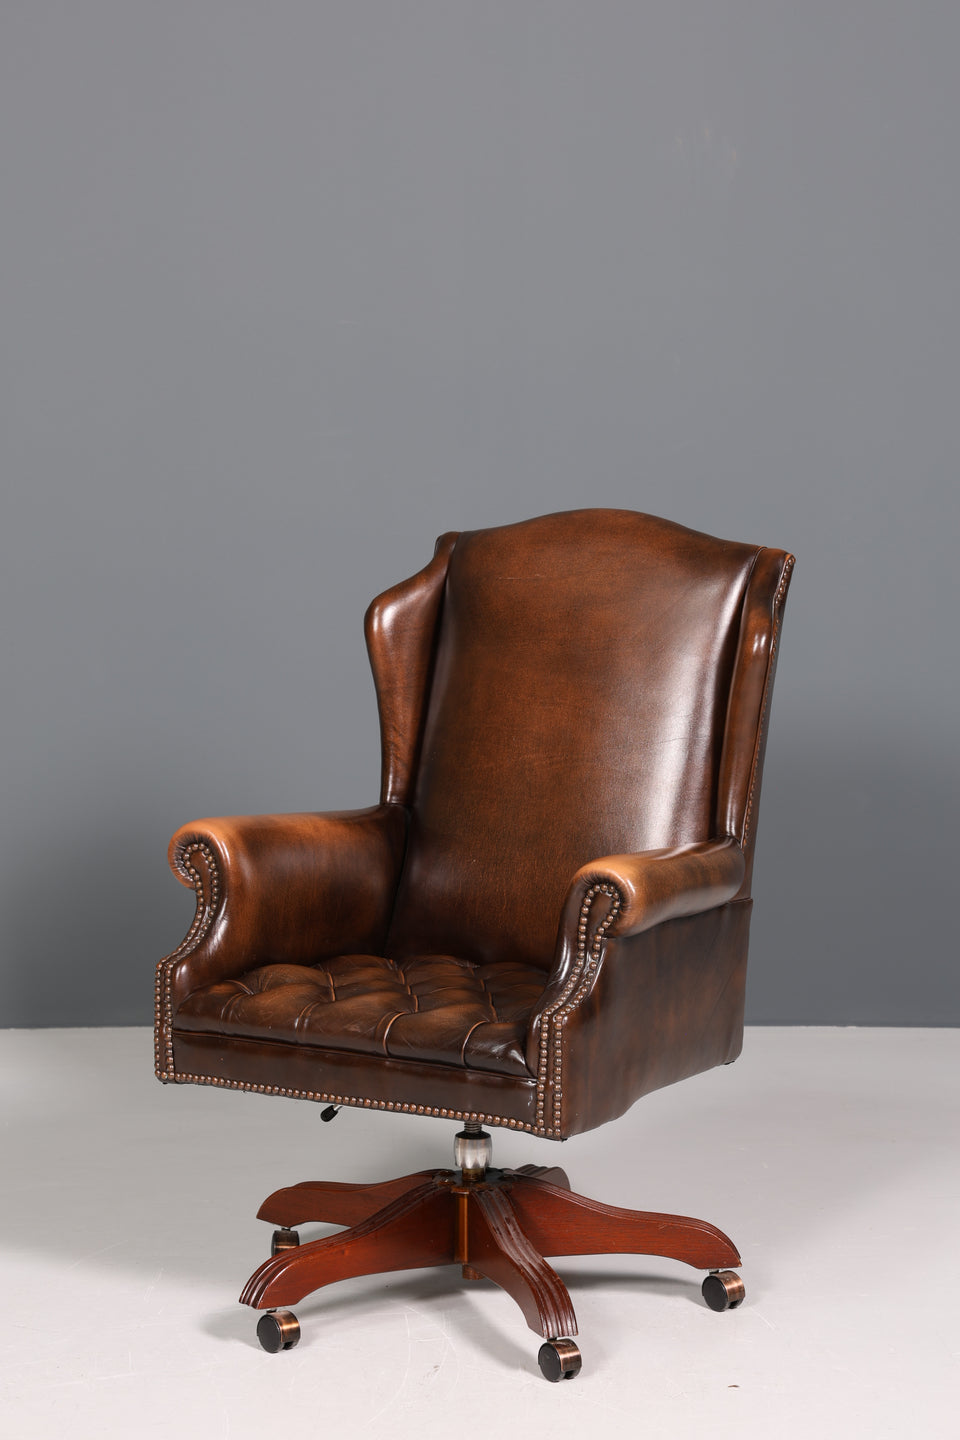 Wunderschöner Original Chesterfield Bürosessel "Wade" echt Leder Sessel Bürostuhl Office Chair